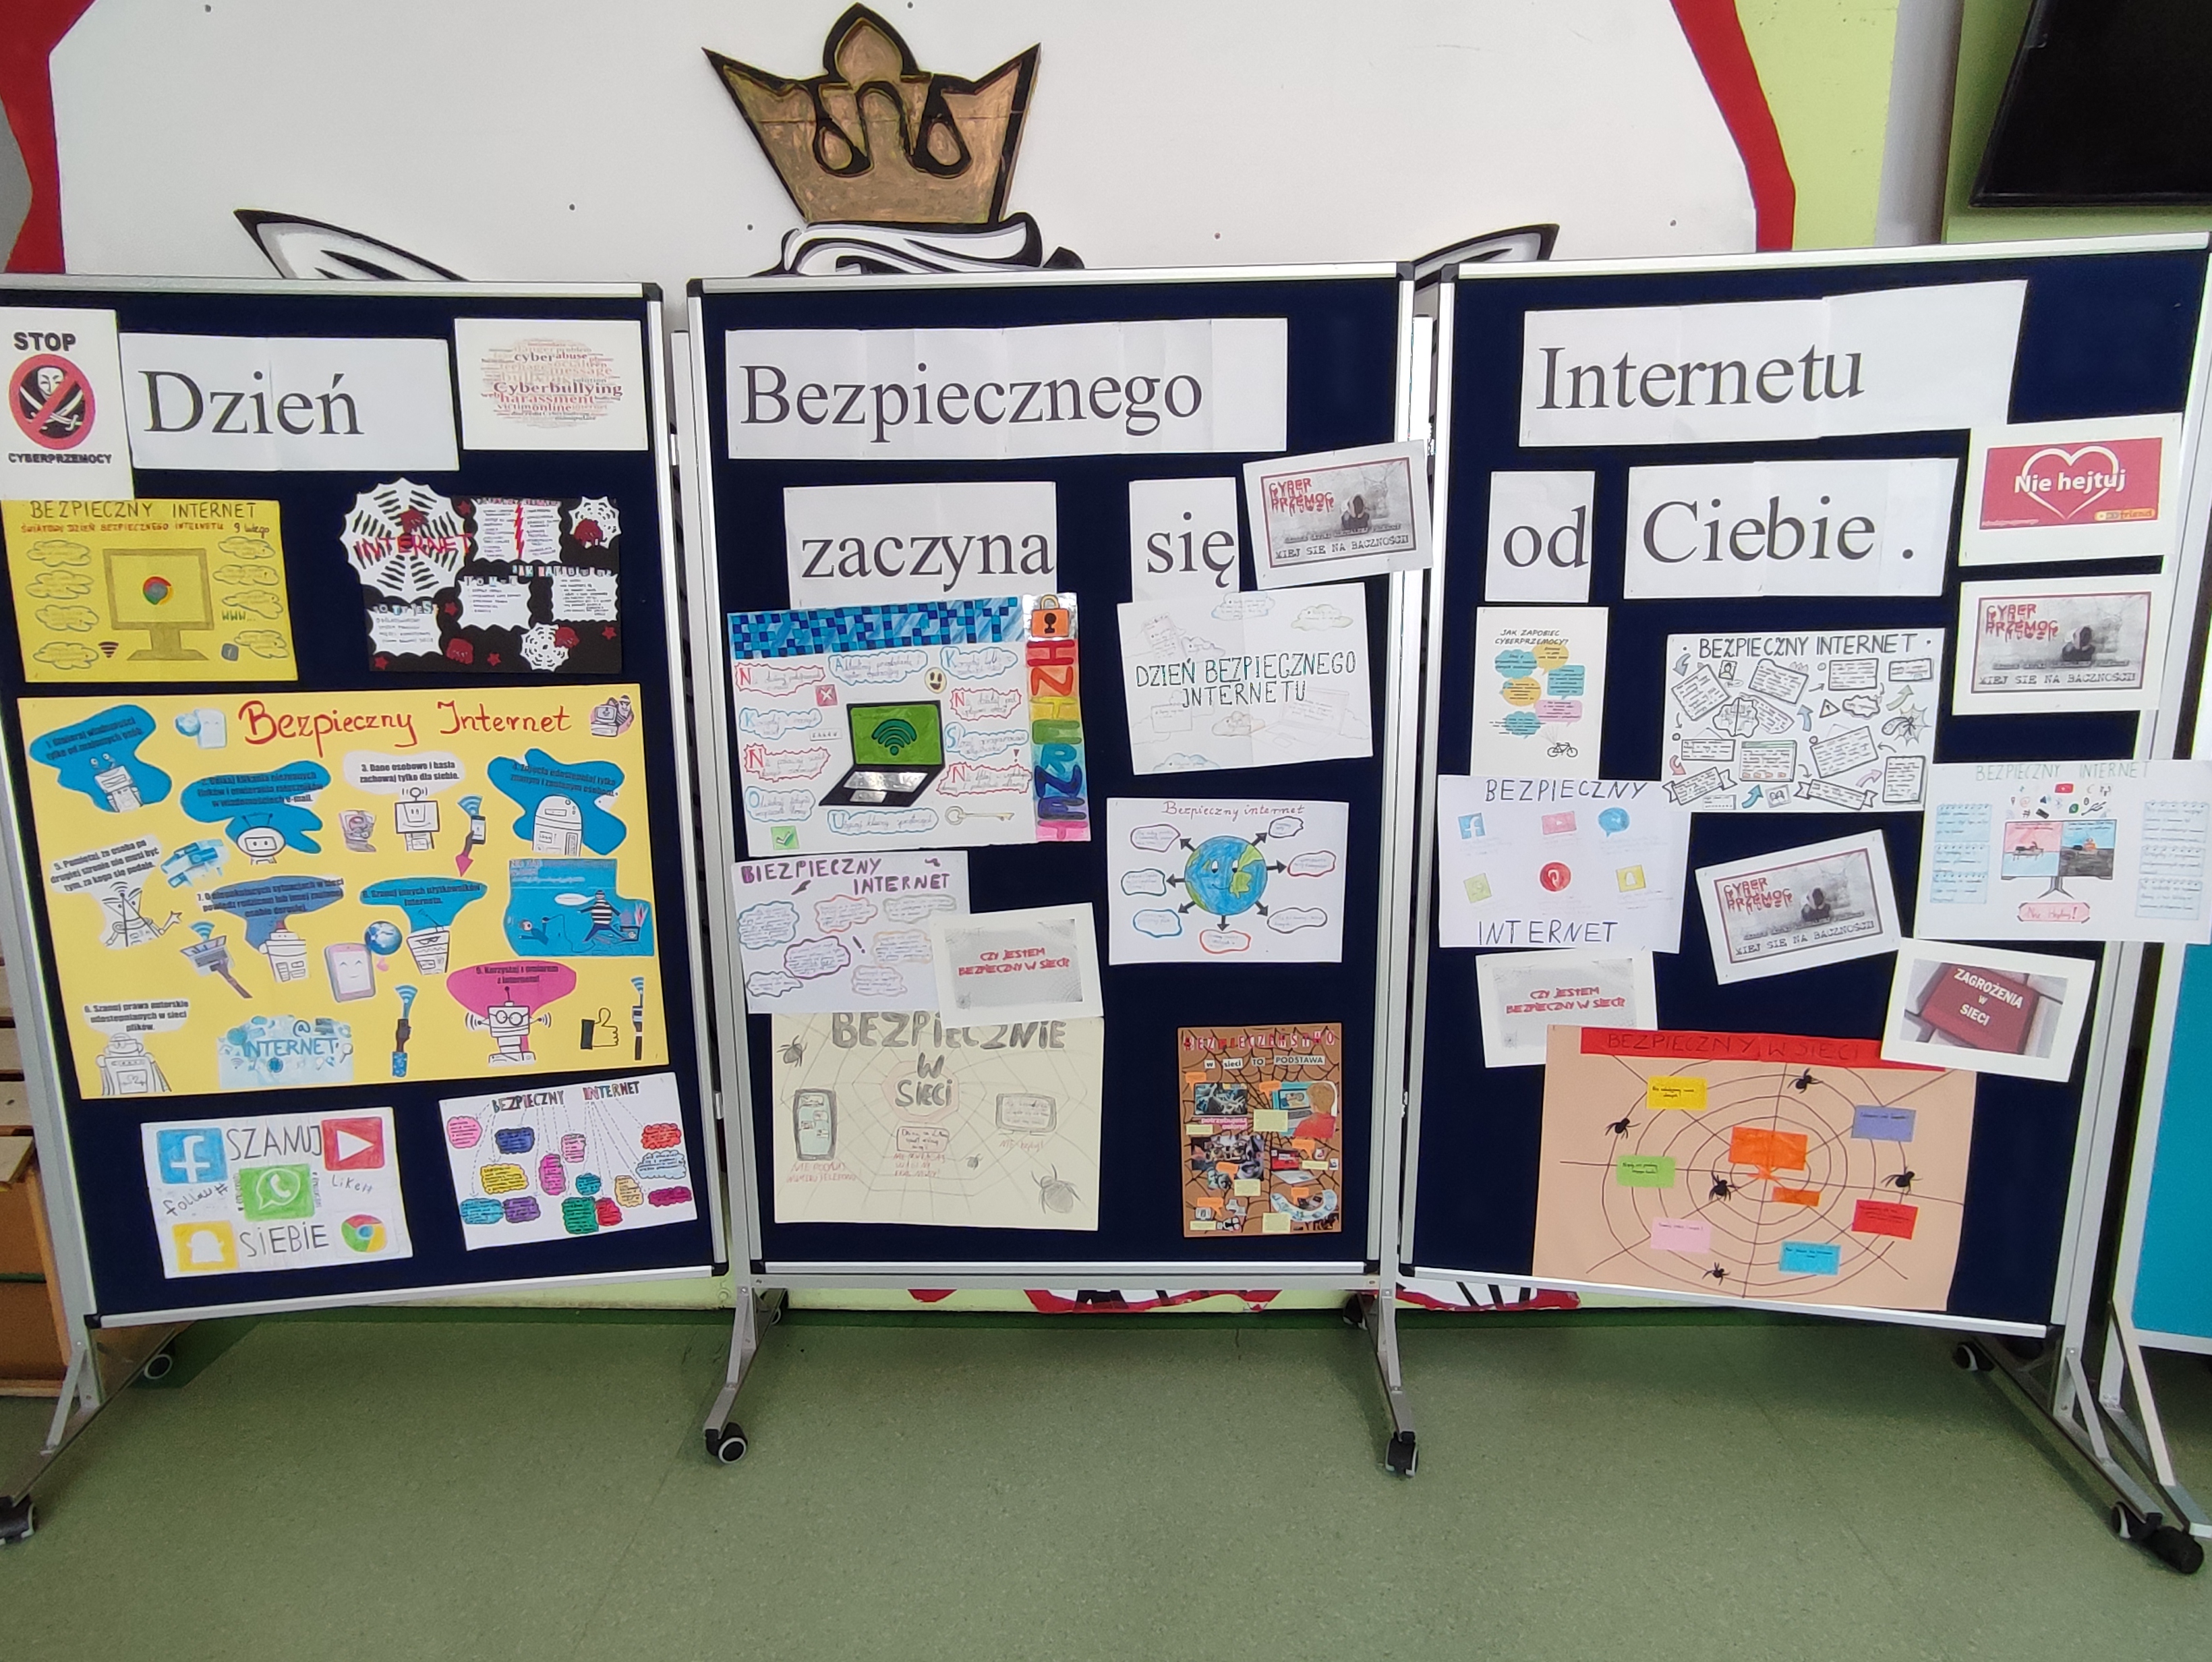 Dzień Bezpiecznego Internetu w szkole - wystawa prac